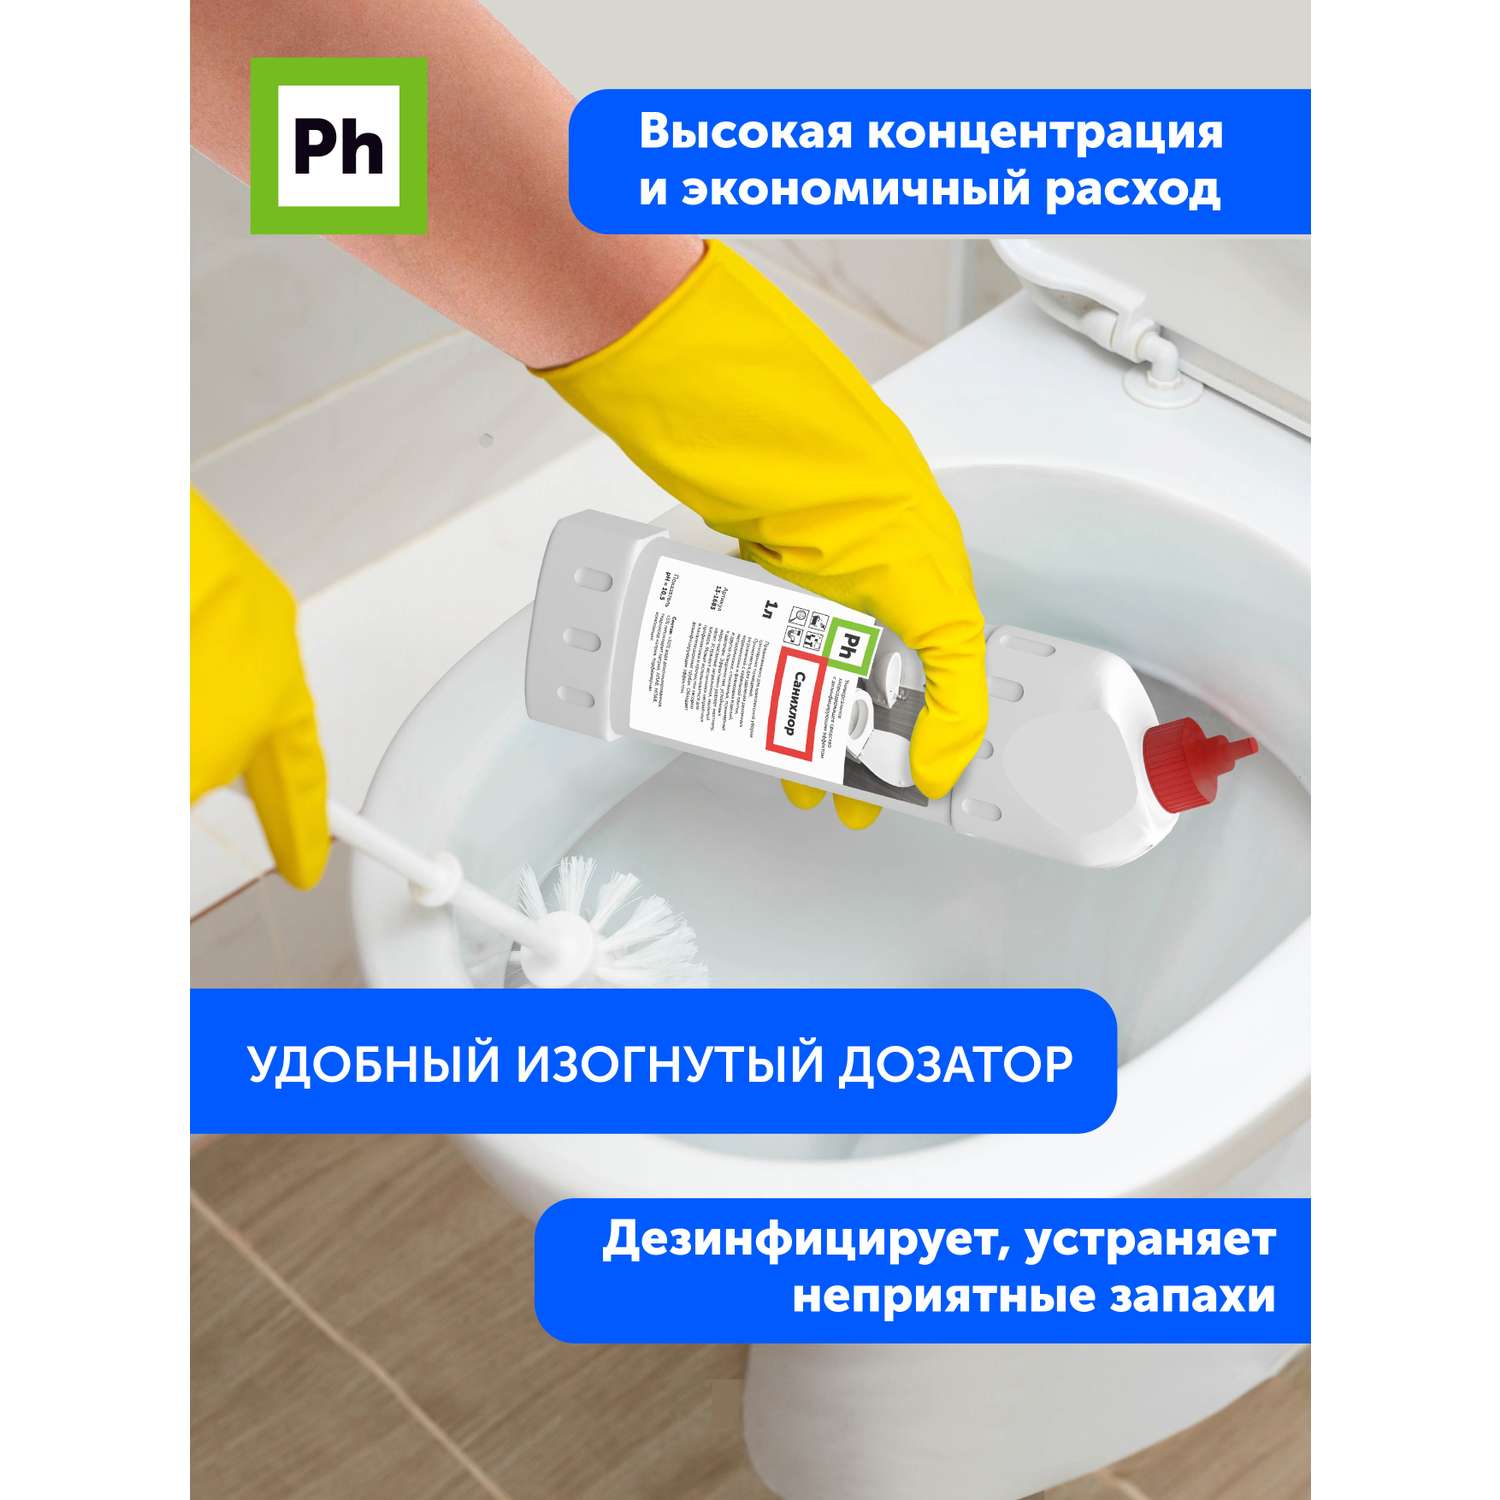 Набор средств для уборки Ph профессиональный Чистый туалет - фото 6